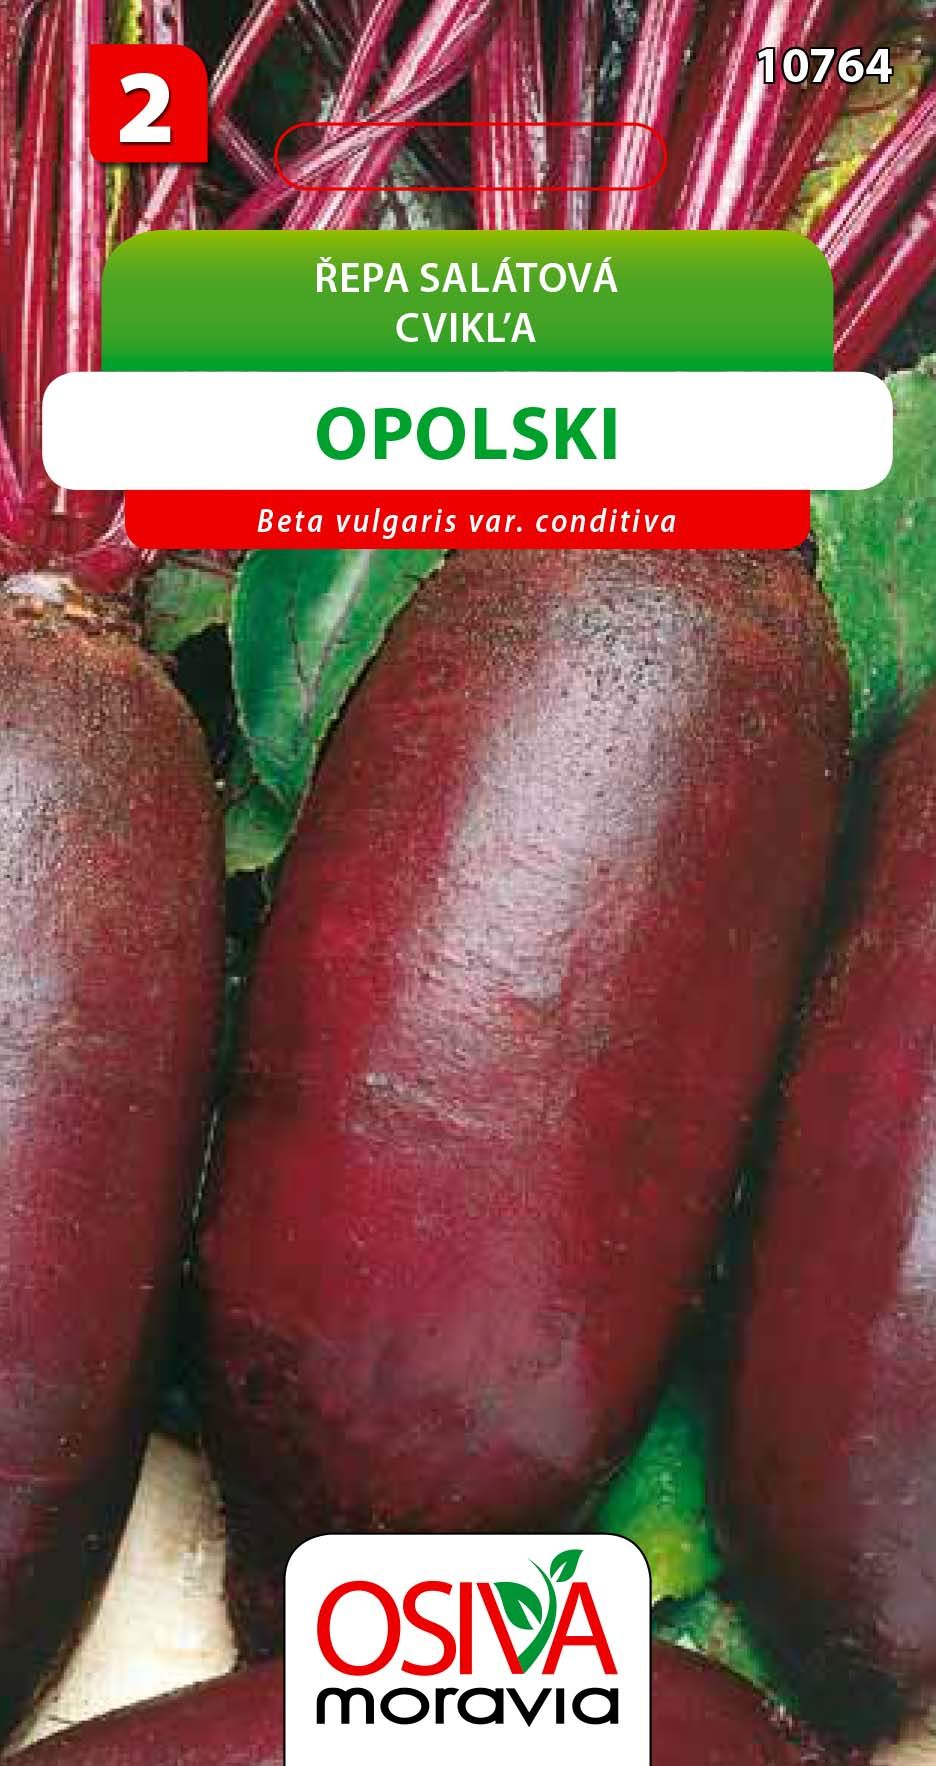 Řepa salátová - Opolski